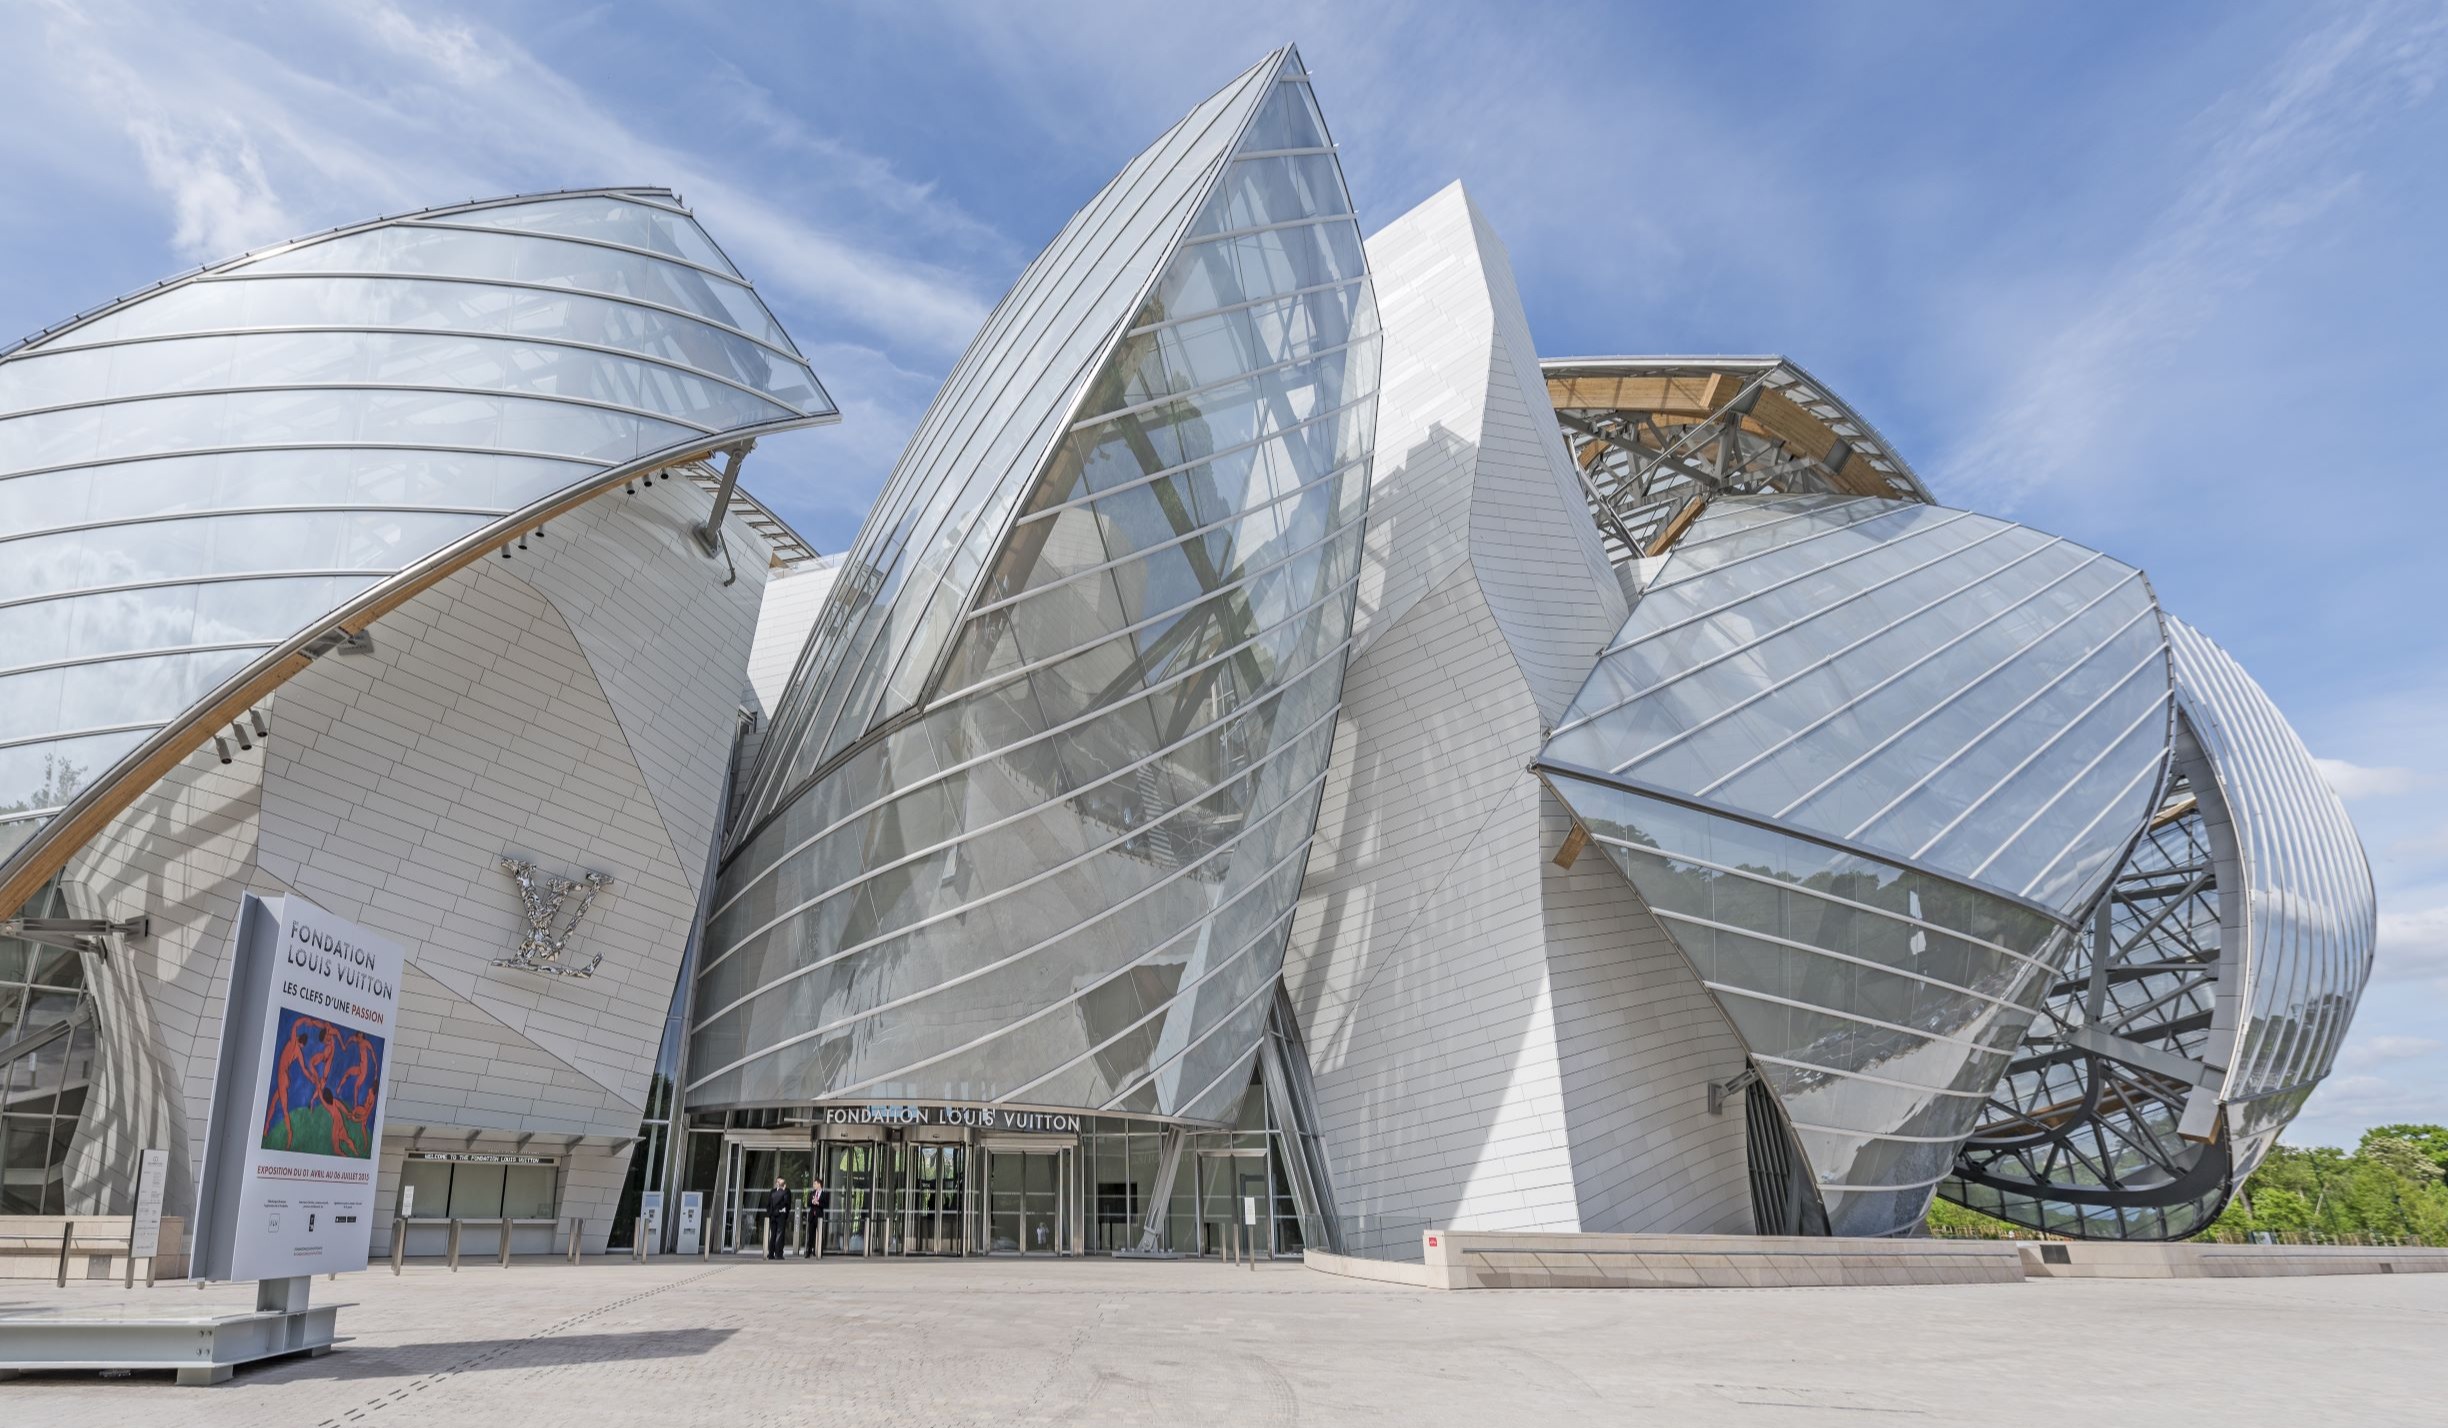 Passionate about Paris' Fondation Louis Vuitton: a 'Magnificent